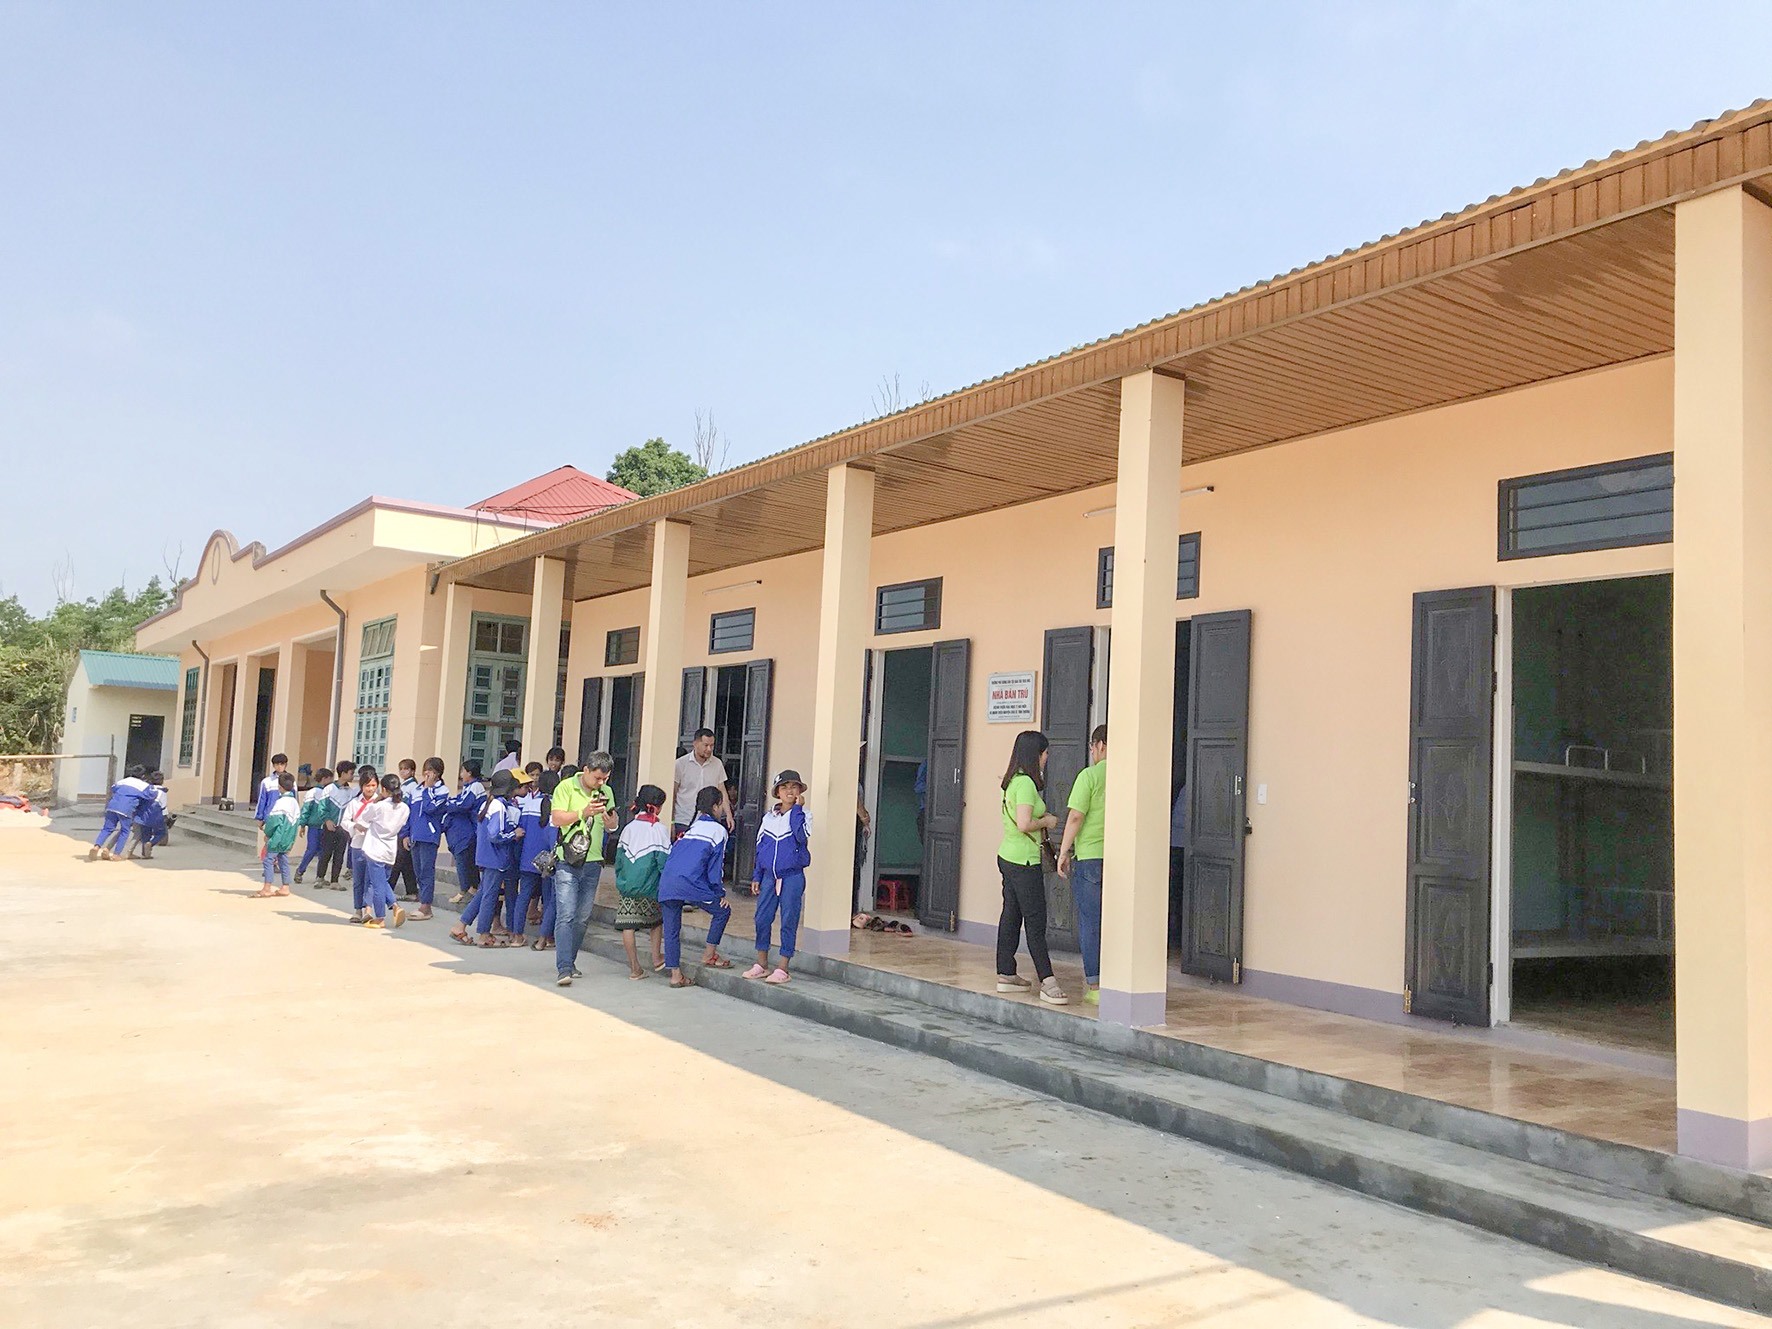 Nhà bán trú Trường Phổ thông dân tộc bán trú Húc do Bệnh viện Đại học Y Hà Nội xây tặng-Ảnh: Đình Phục​